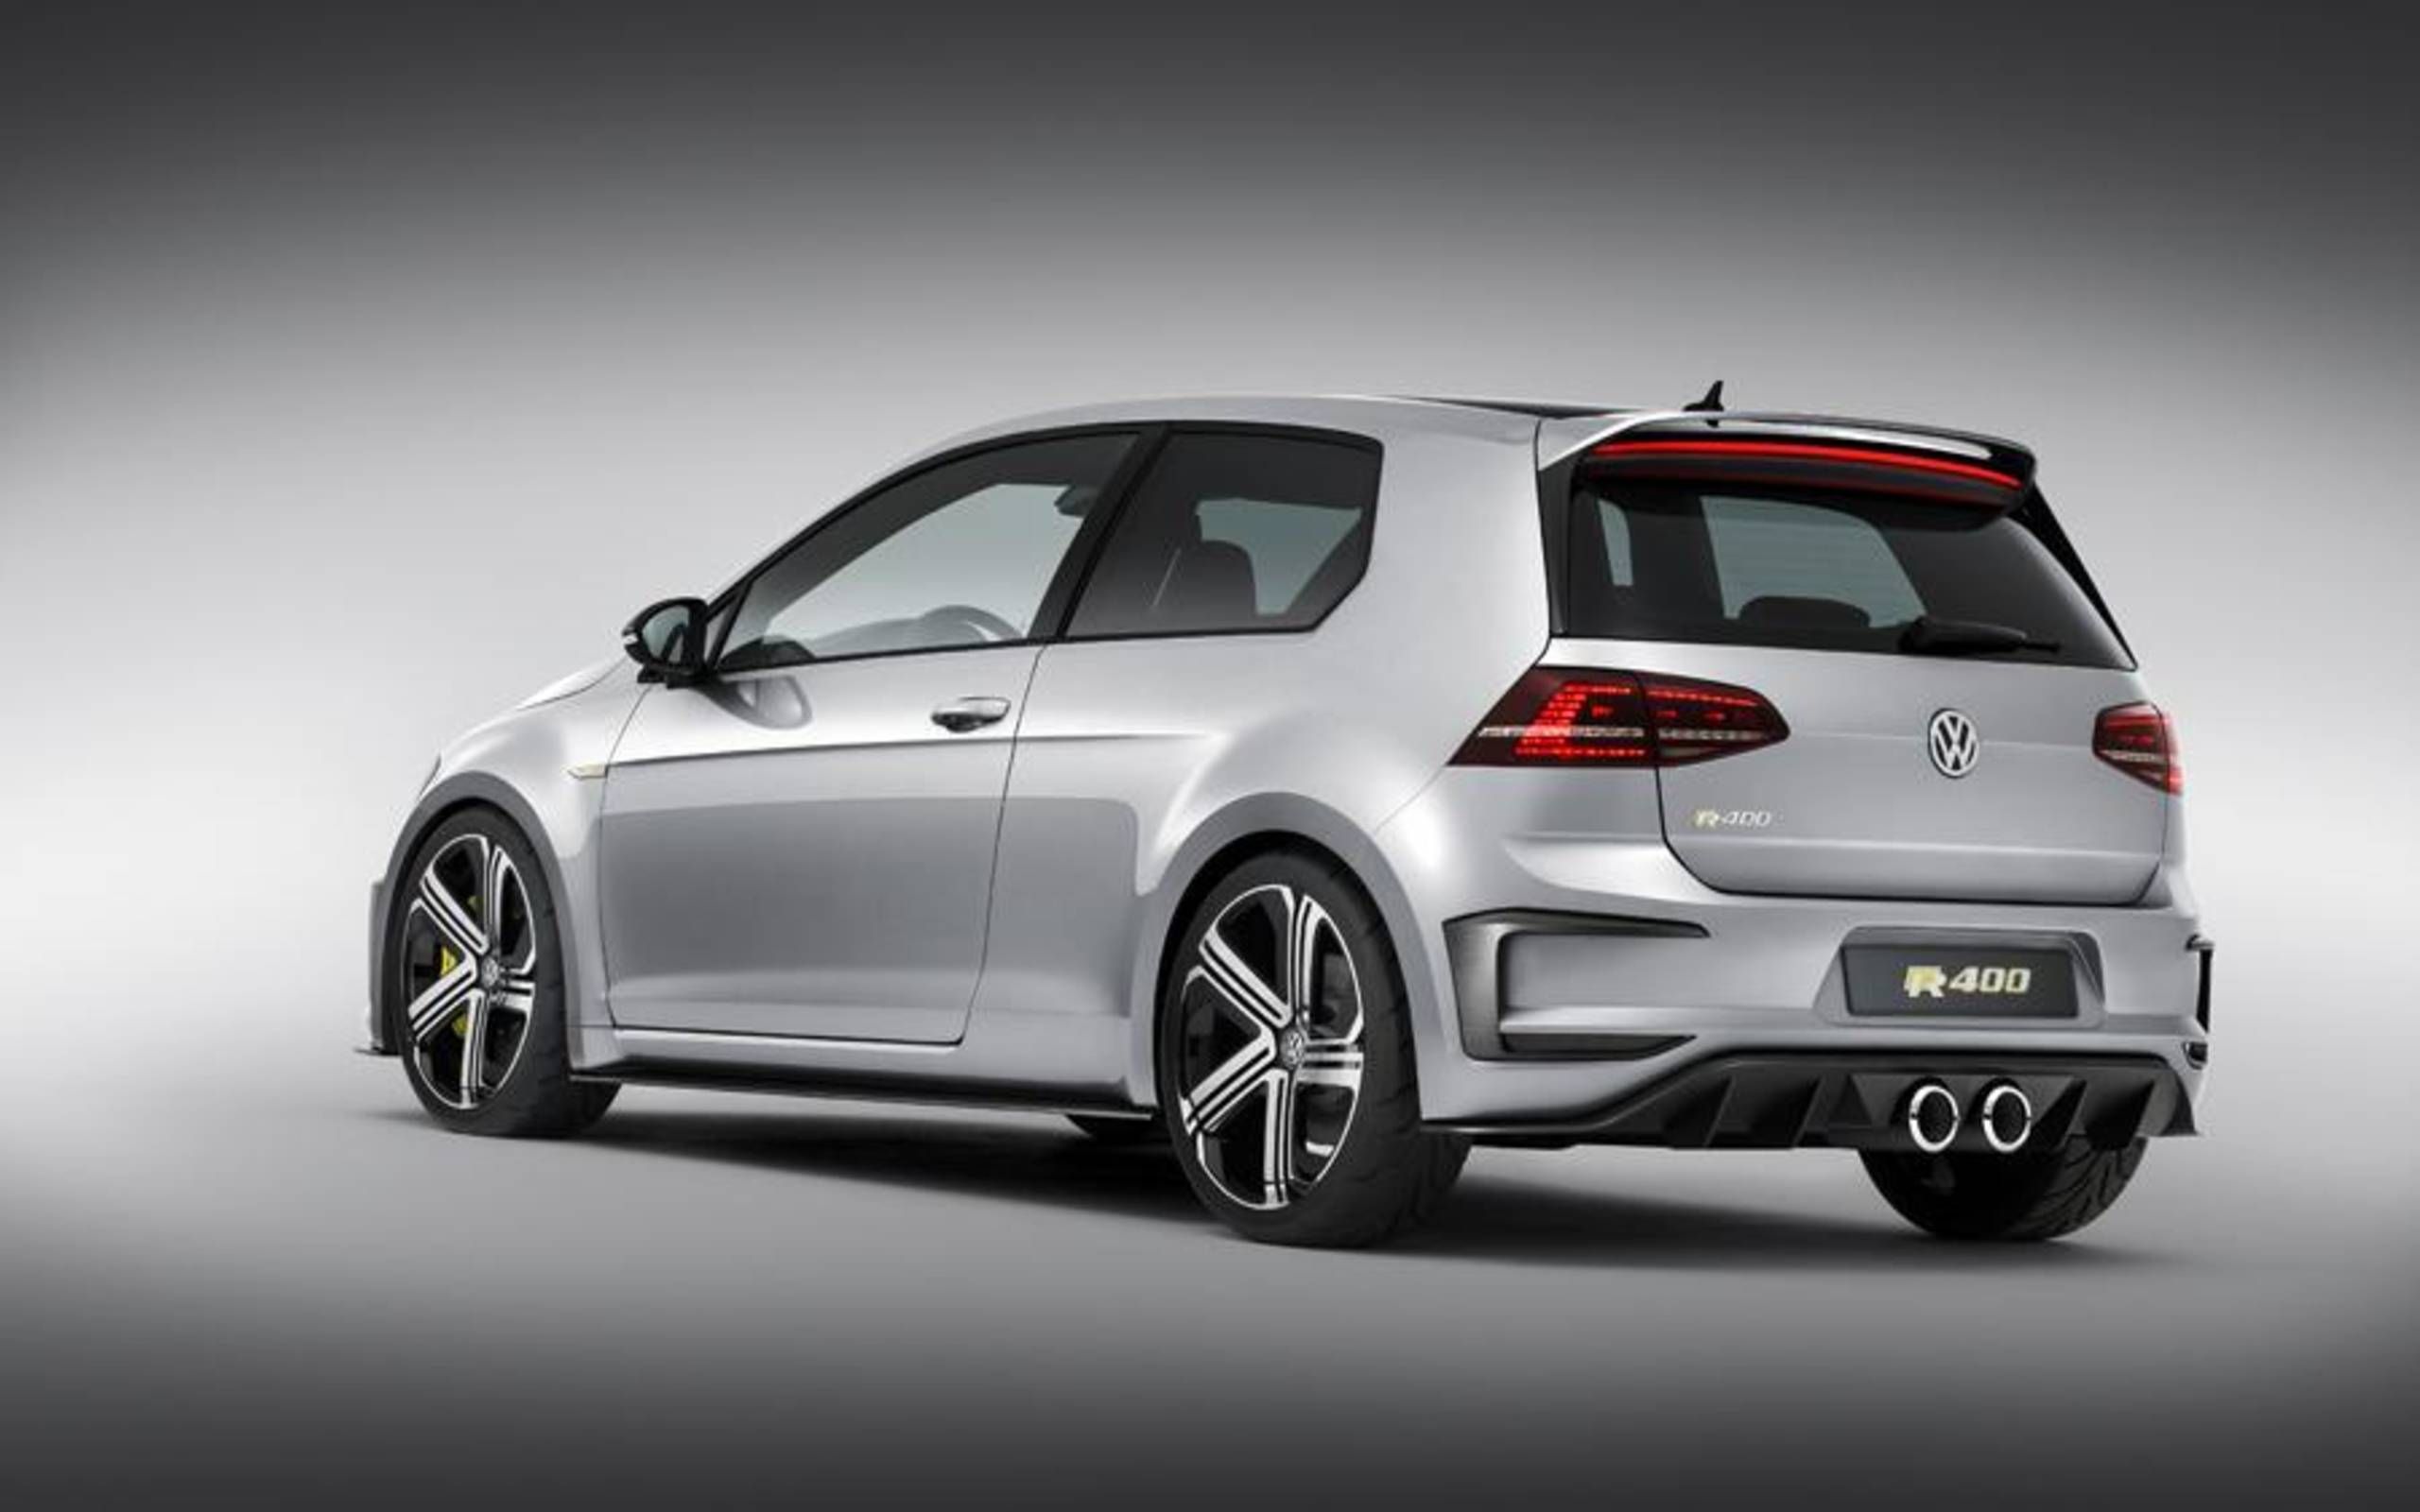 Rundt om udbytte oversættelse Volkswagen Golf R400: Meet the hottest hatch